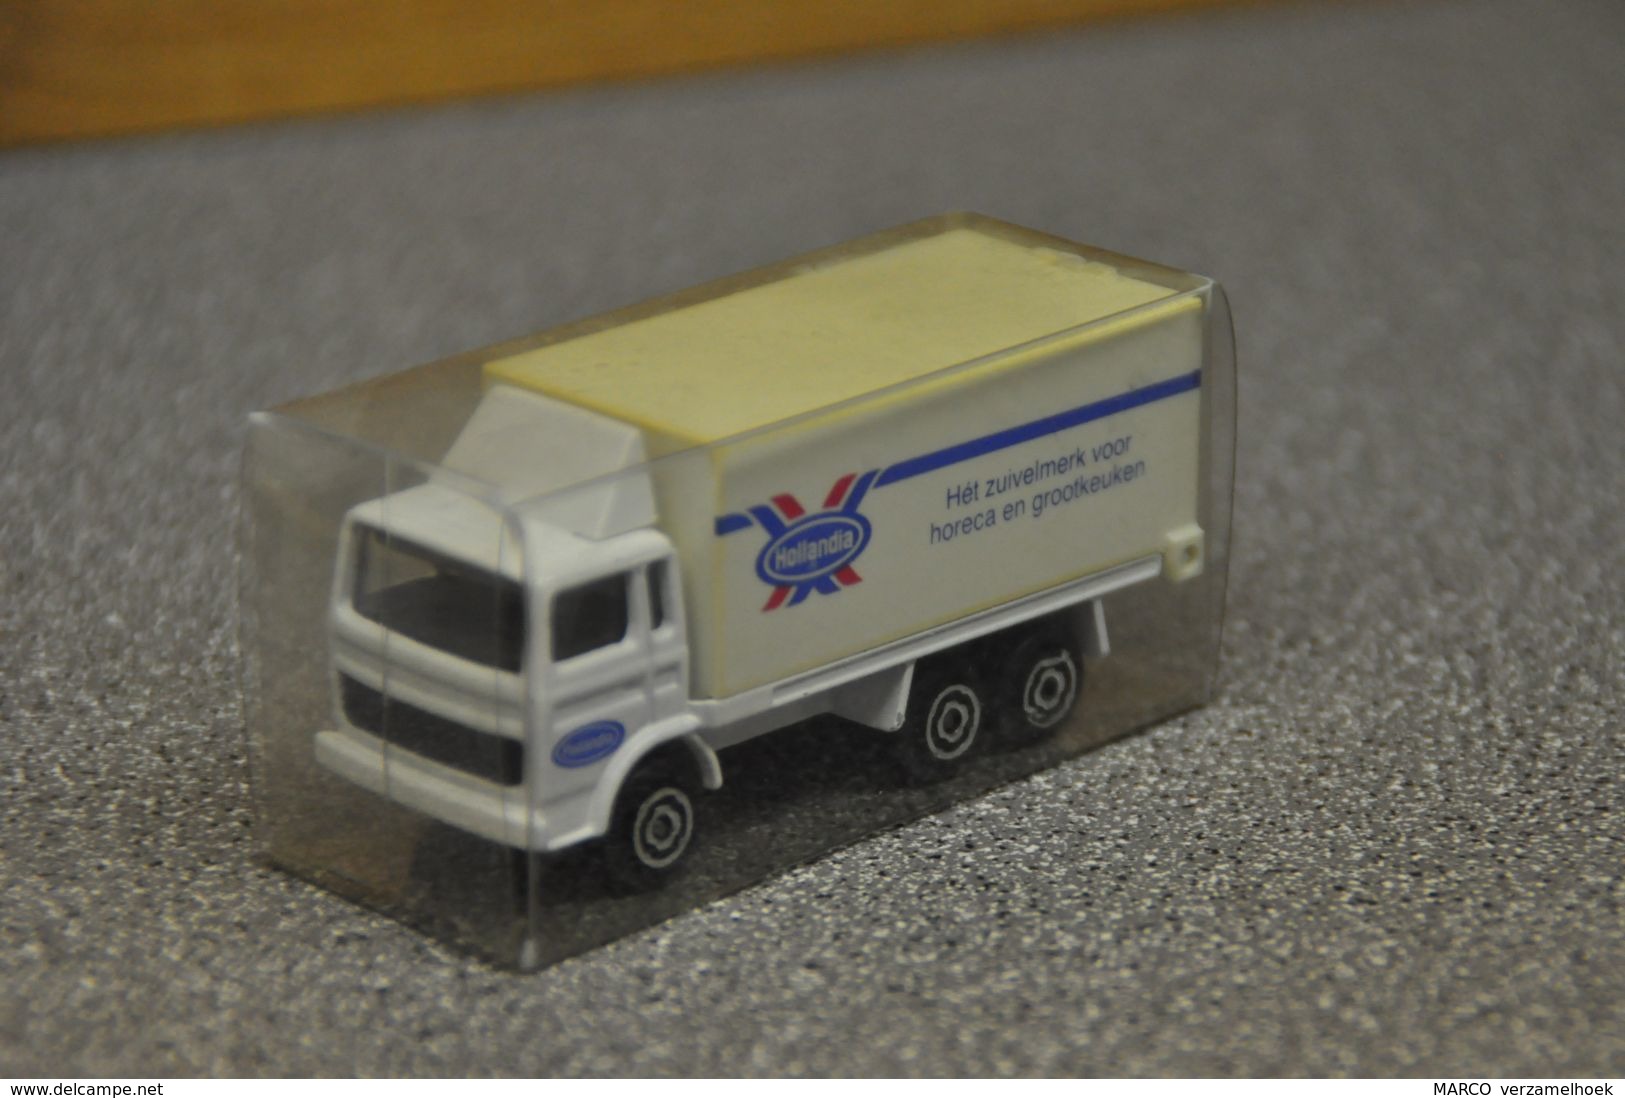 DAF-volvo Hollandia Zuivel Truck-vrachtwagen-camion Schaal 1:87 - Trucks, Buses & Construction